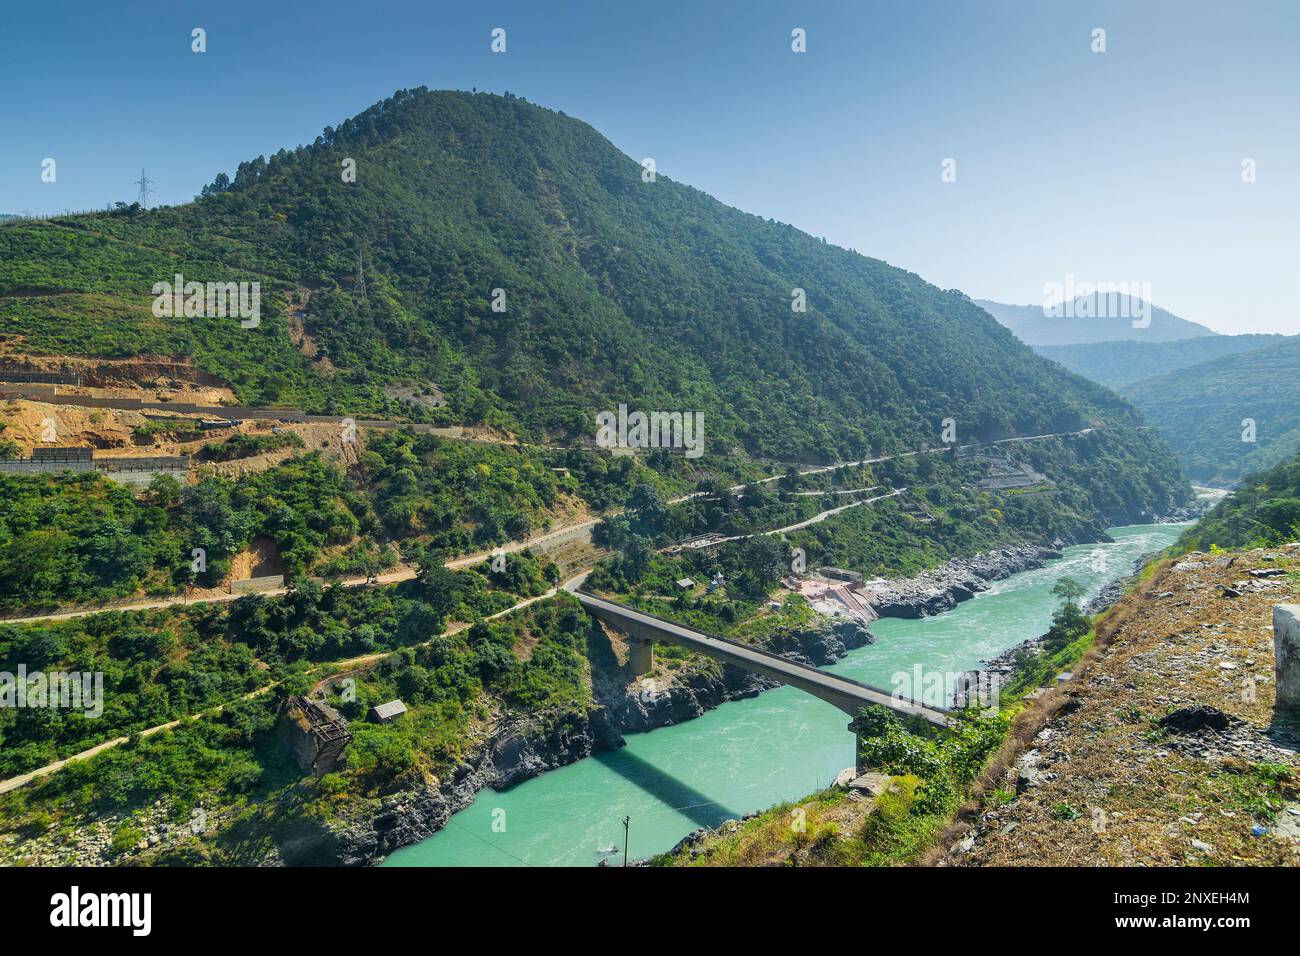 Pont à Devprayag, Godly Confluence, Garhwal, Uttarakhand, Inde. Ici, Alaknanda rencontre la rivière Bhagirathi et les deux rivières Ganges sont formées Banque D'Images